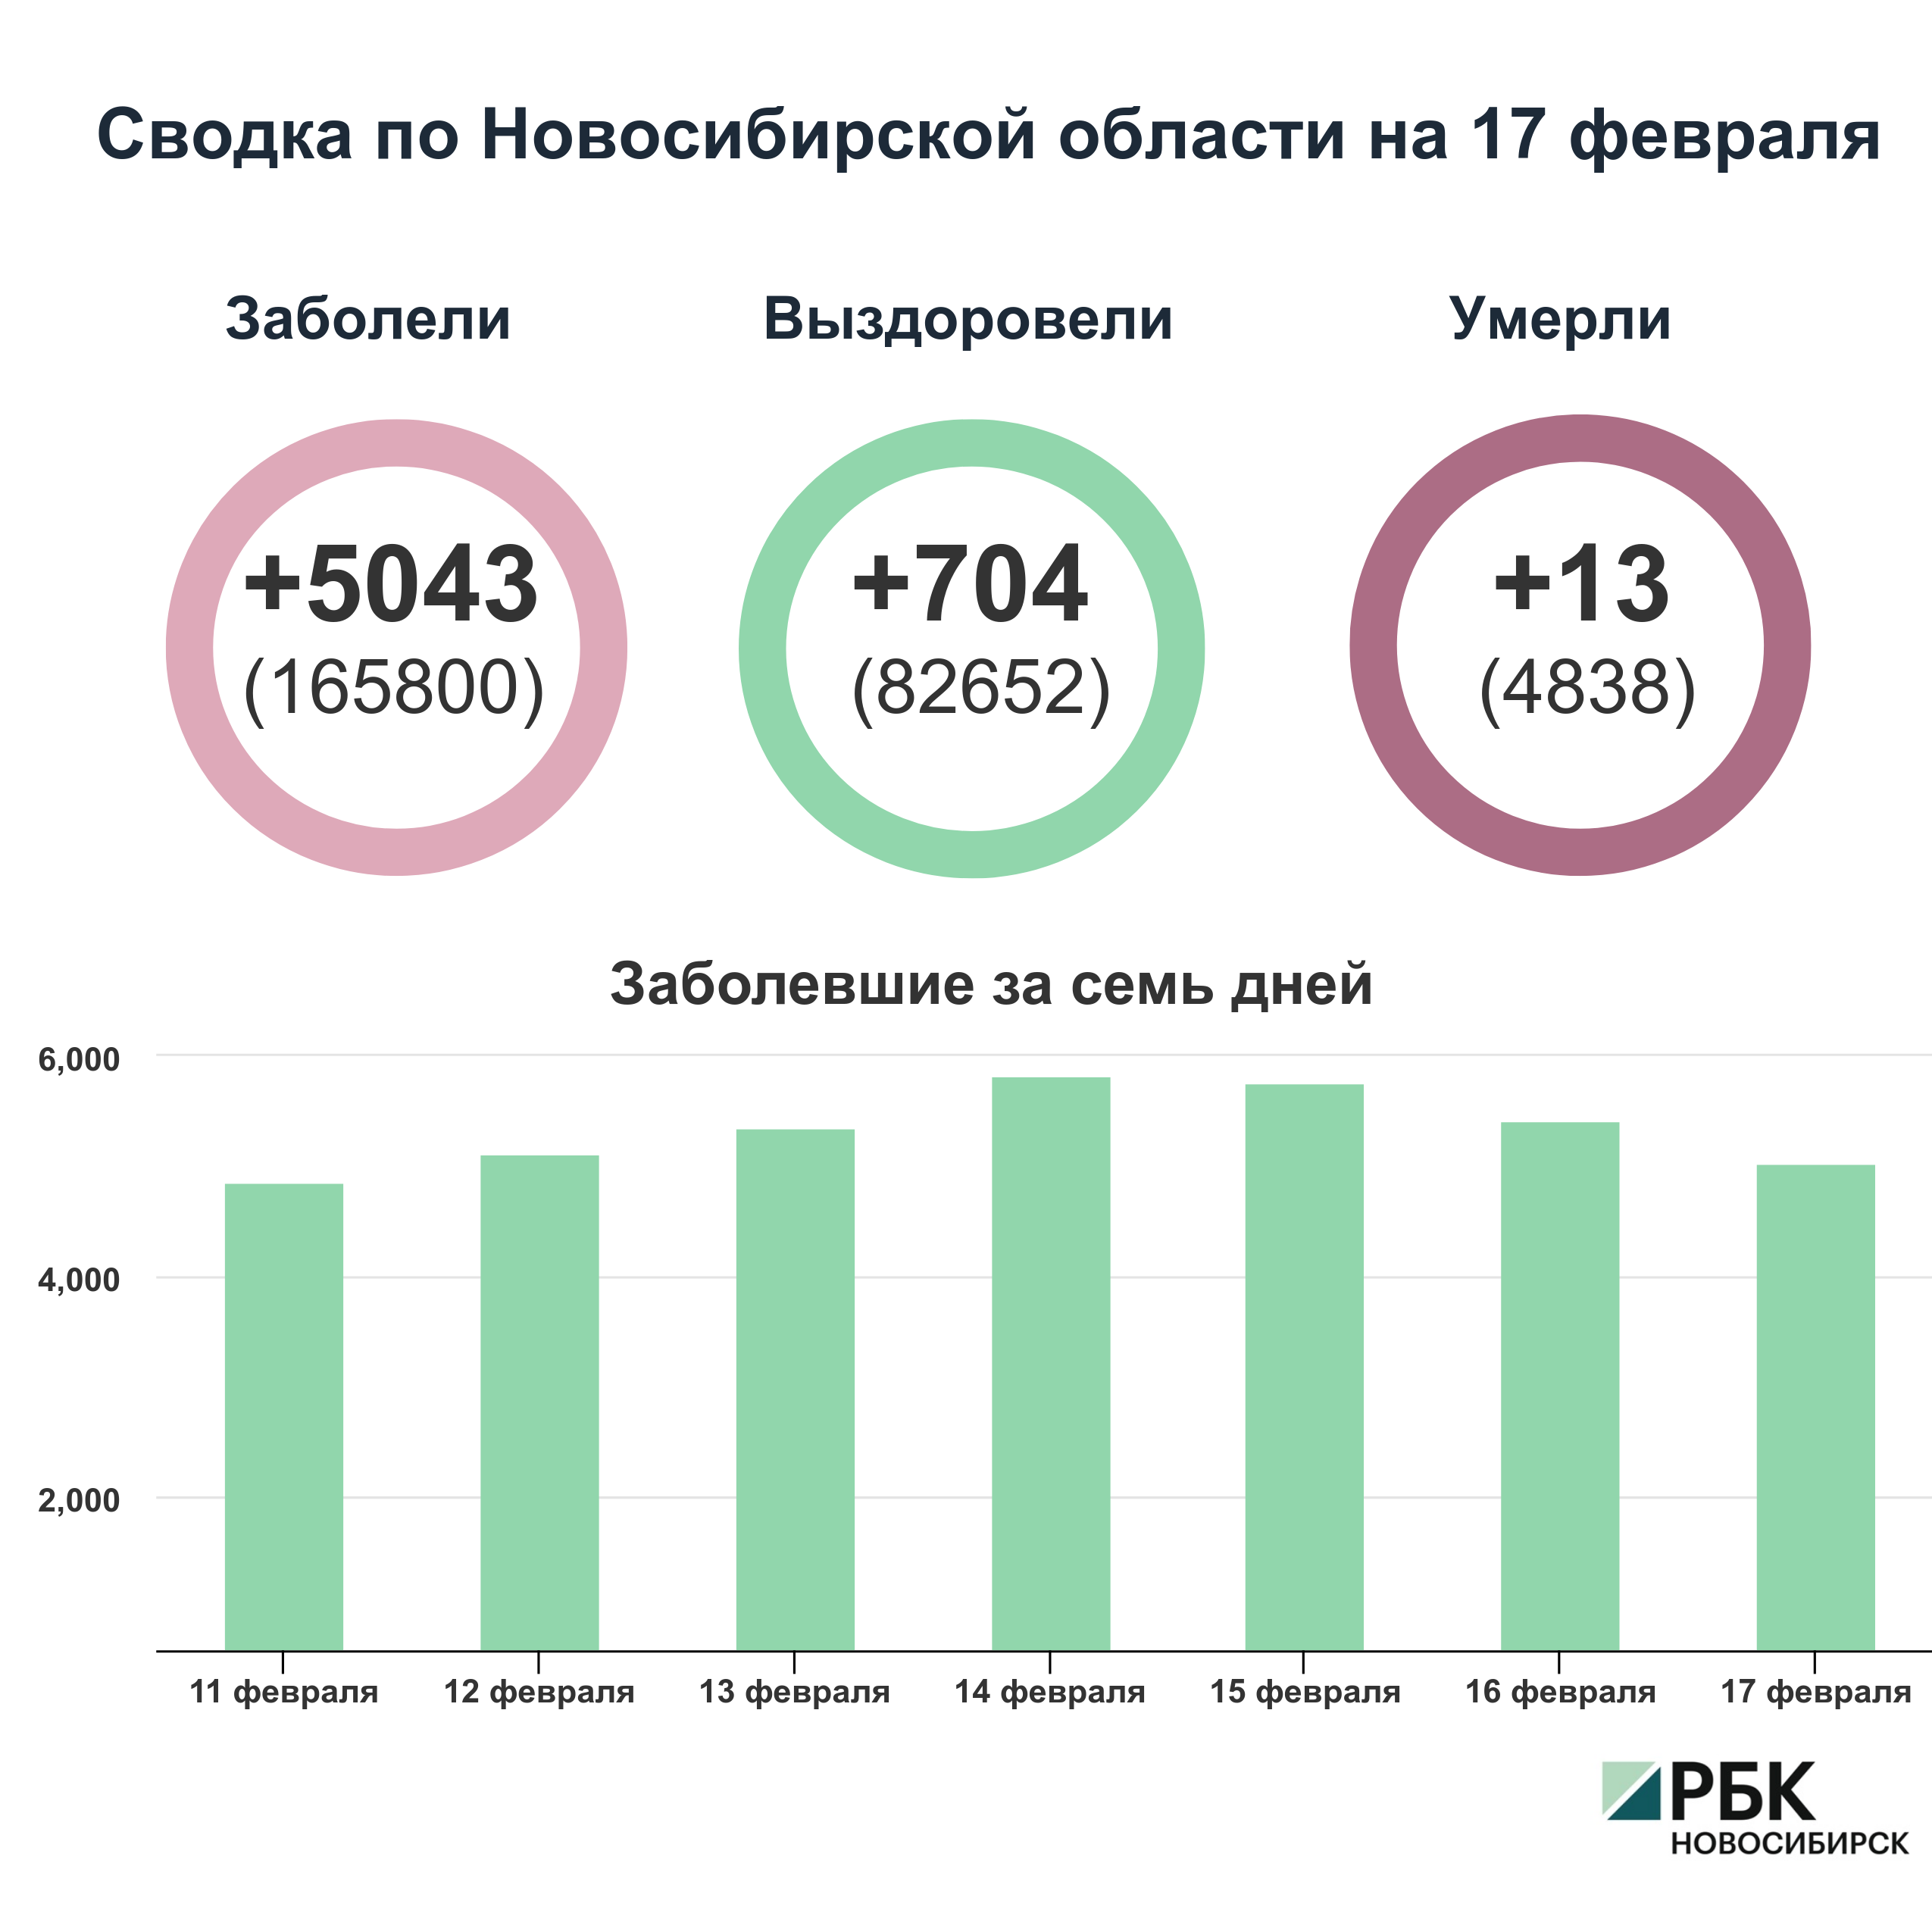 Коронавирус в Новосибирске: сводка на 17 февраля